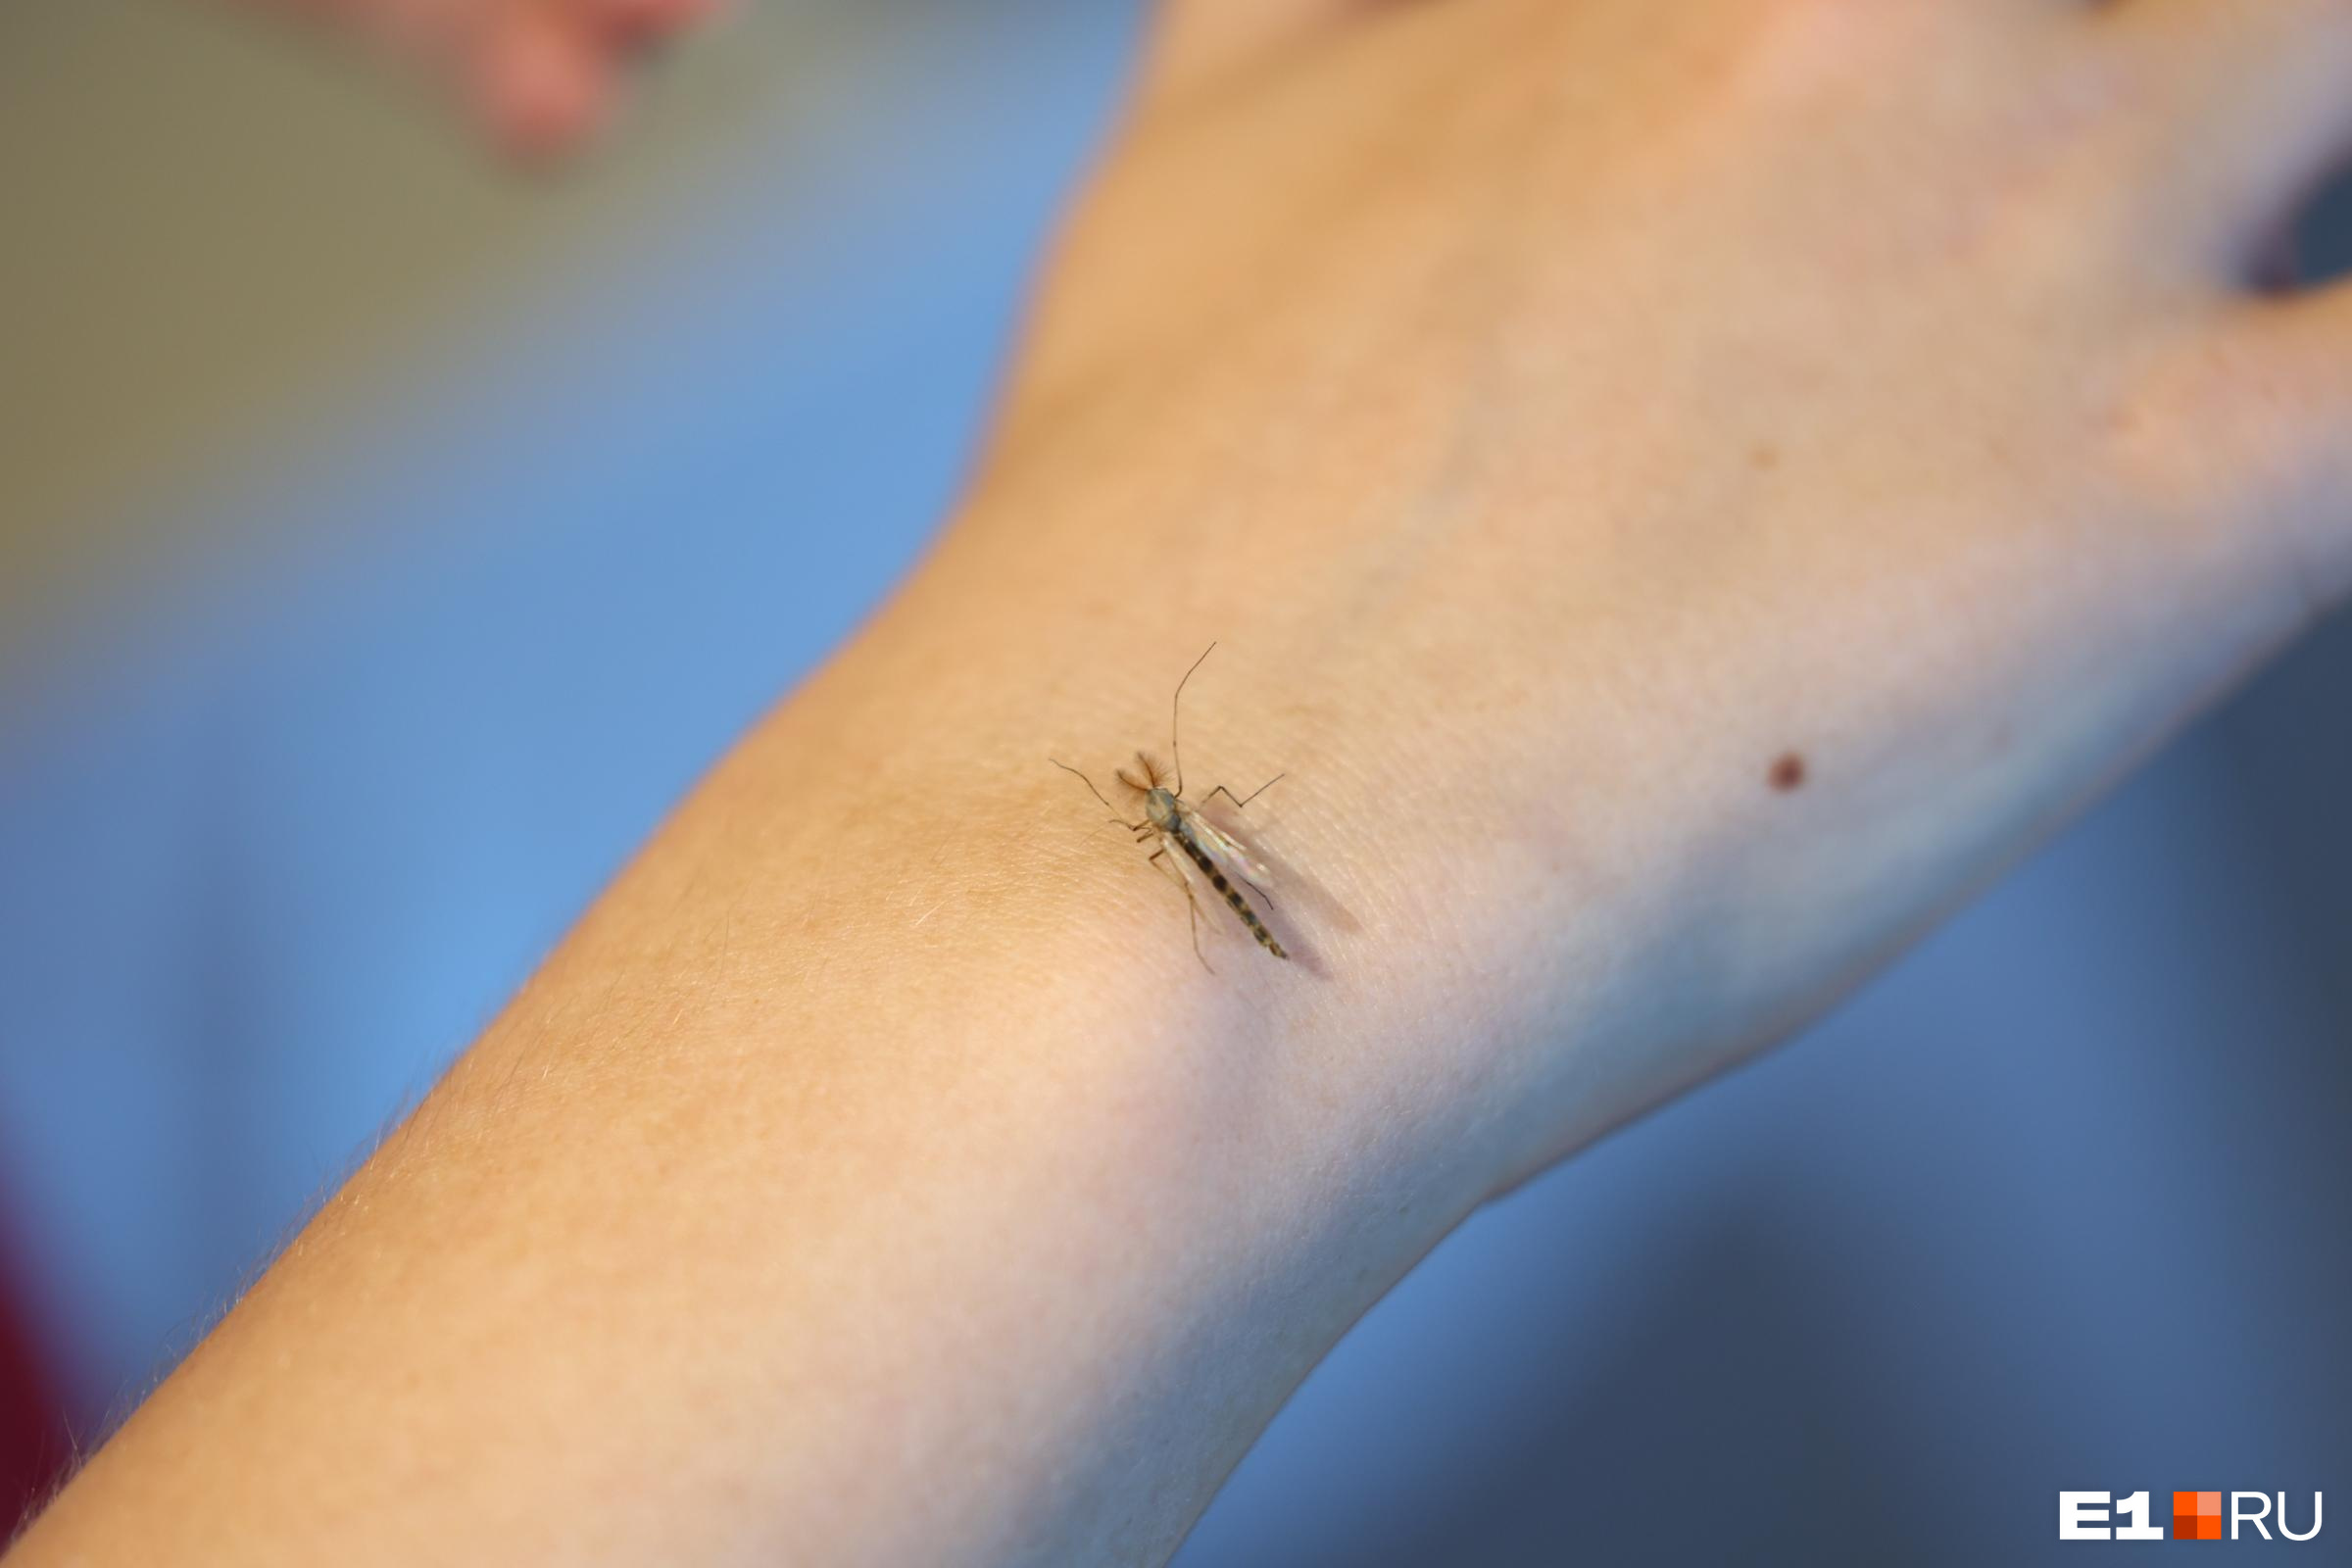 Алтайский биолог объяснила, почему комары пьют кровь и что сделать, чтобы не кусали